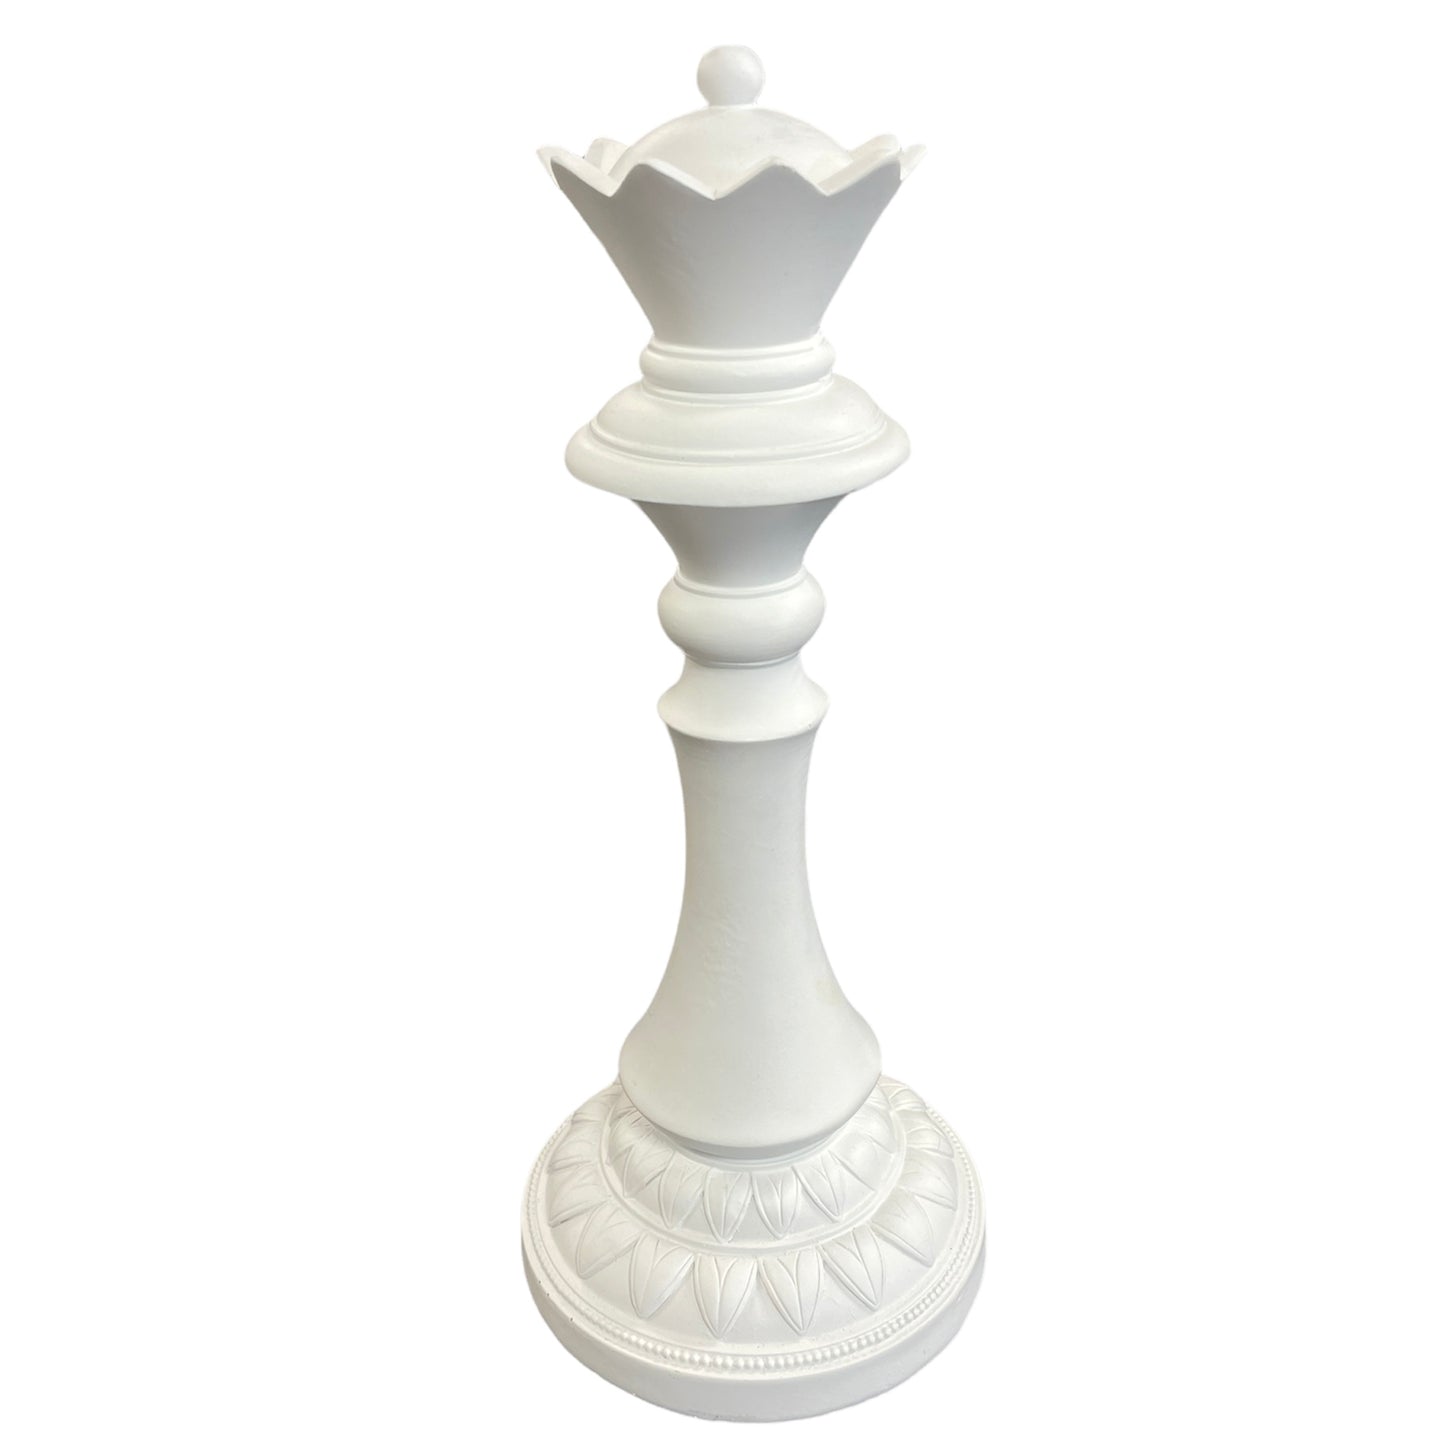 Chess Queen Piece